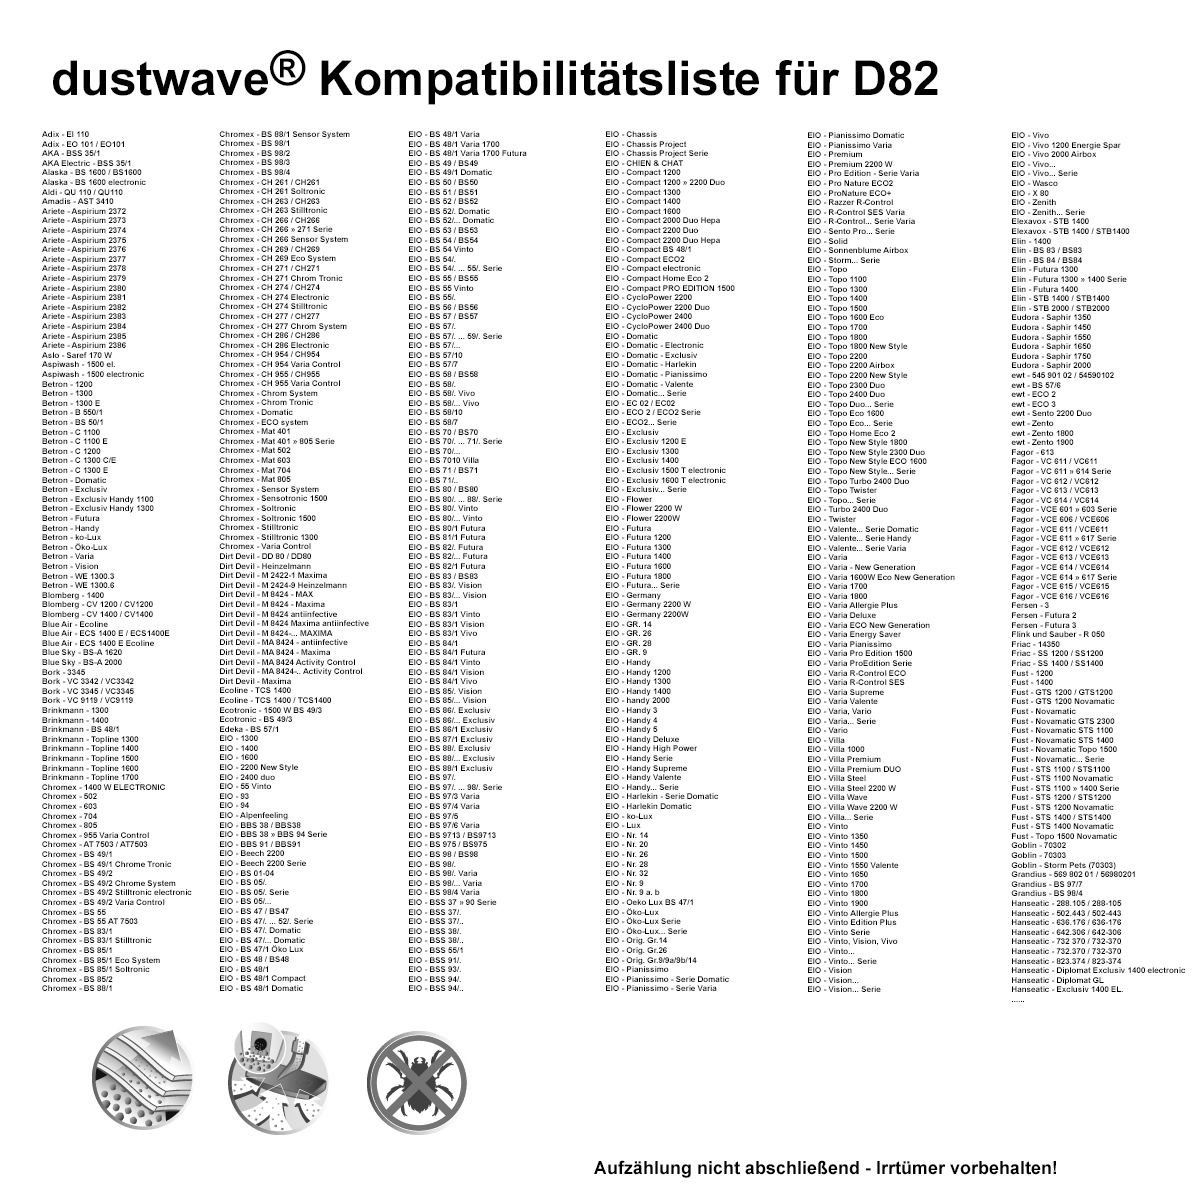 Dustwave® 1 Staubsaugerbeutel für Amadis AST 3410 / AST3410 - hocheffizient mit Hygieneverschluss - Made in Germany